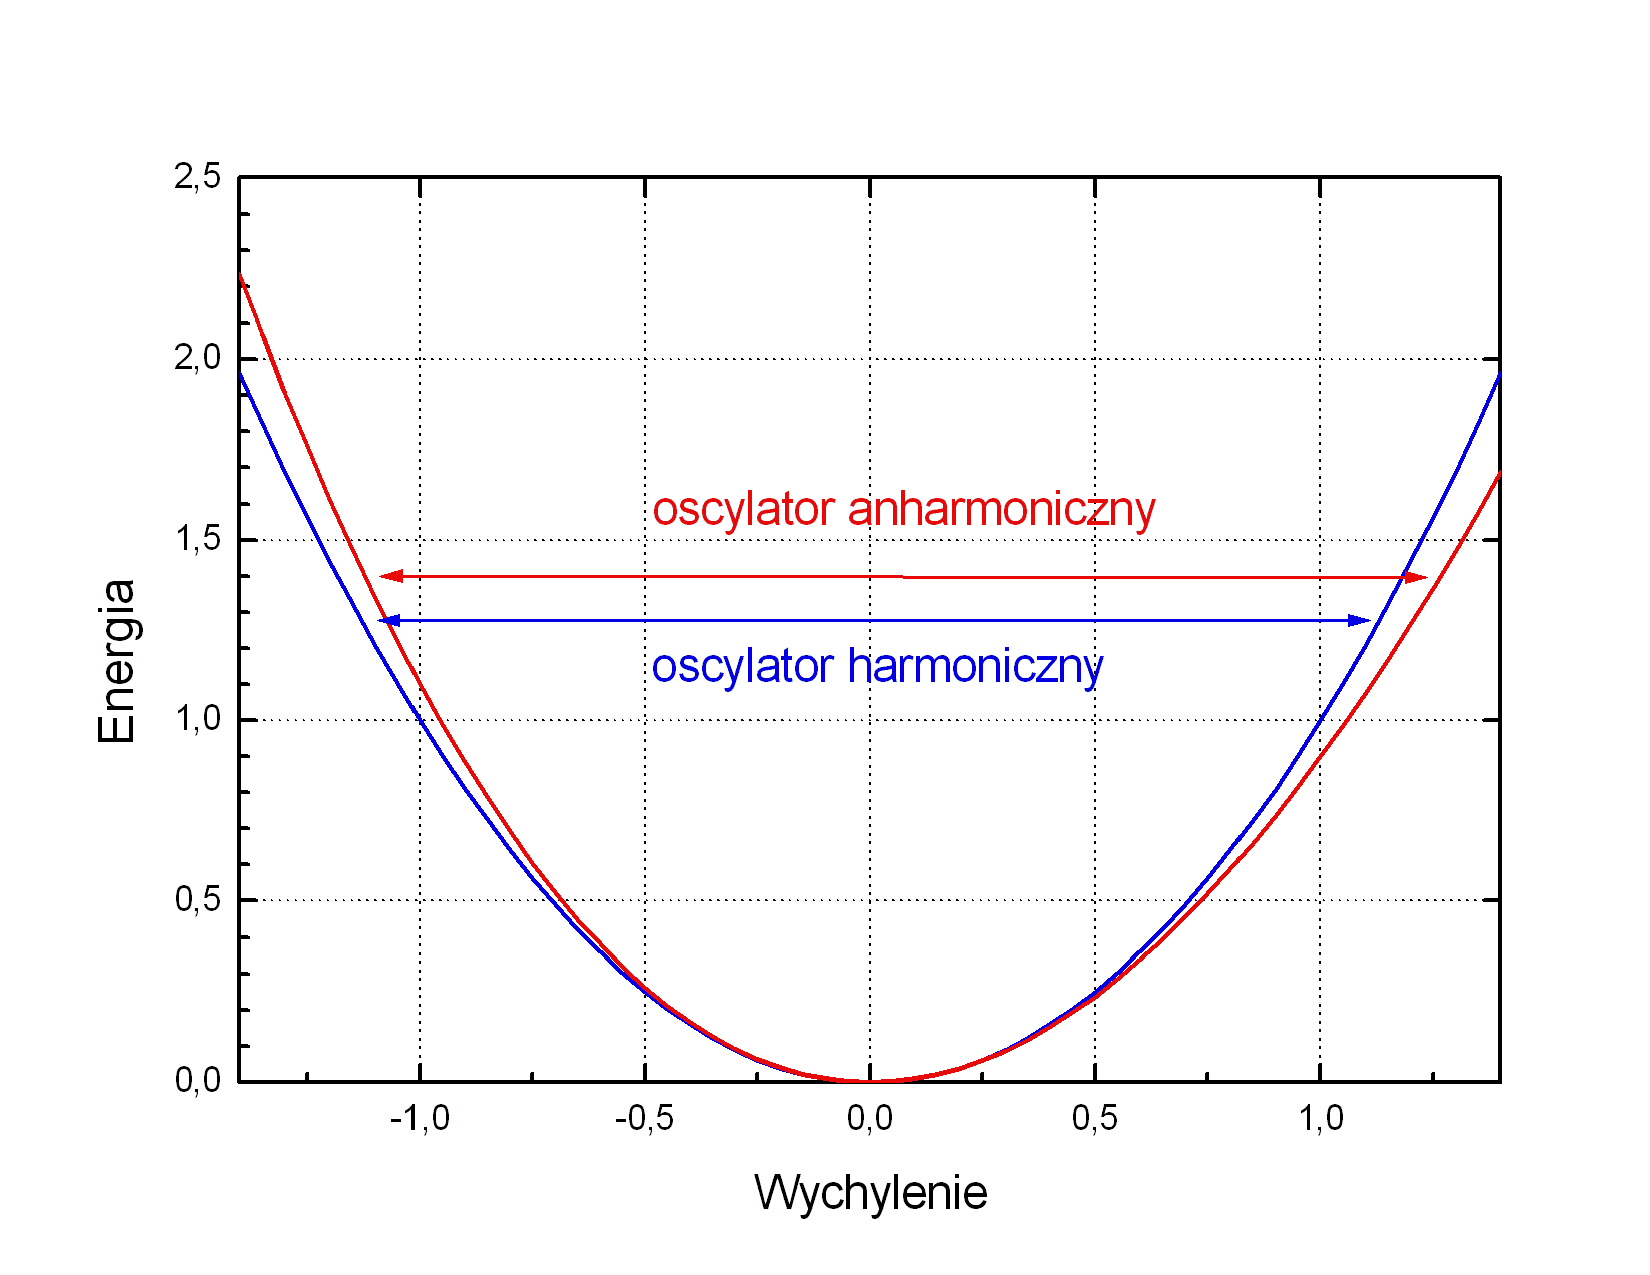 Porwnanie wykresw energii potencjalnej
			 oscylatora harmonicznego i anharmonicznego